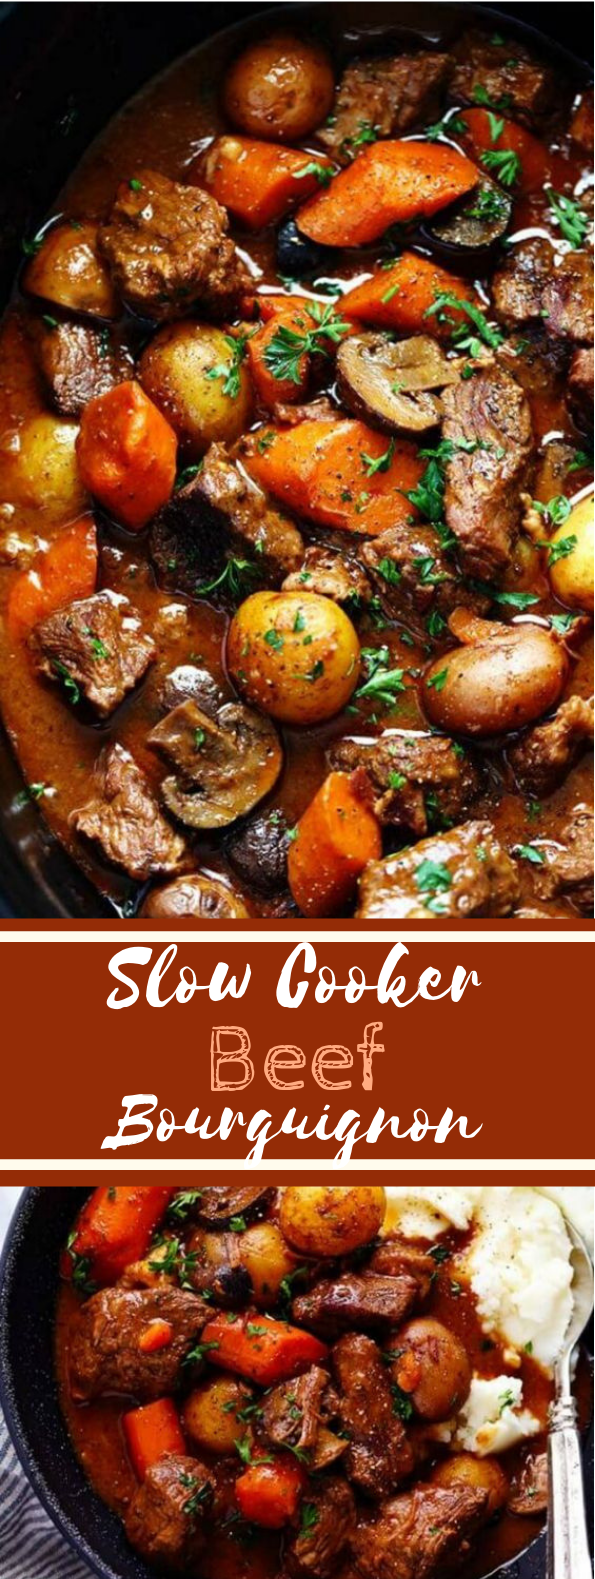 Slow Cooker Beef Bourguignon #beef #dinner